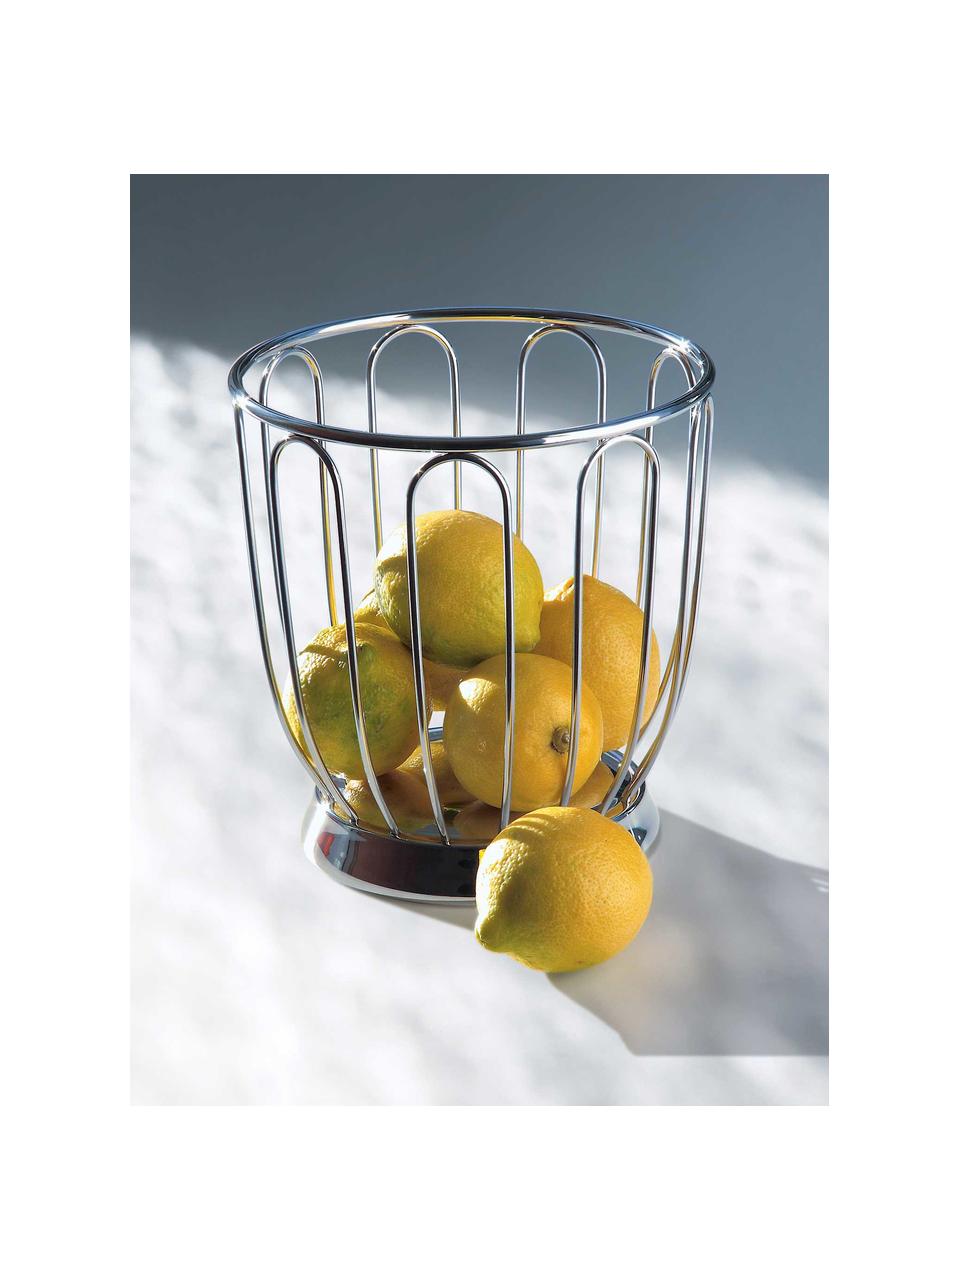 Koš na citrusy Simple, různé velikosti, Nerezová ocel 18/10, Stříbrná, Ø 22 cm